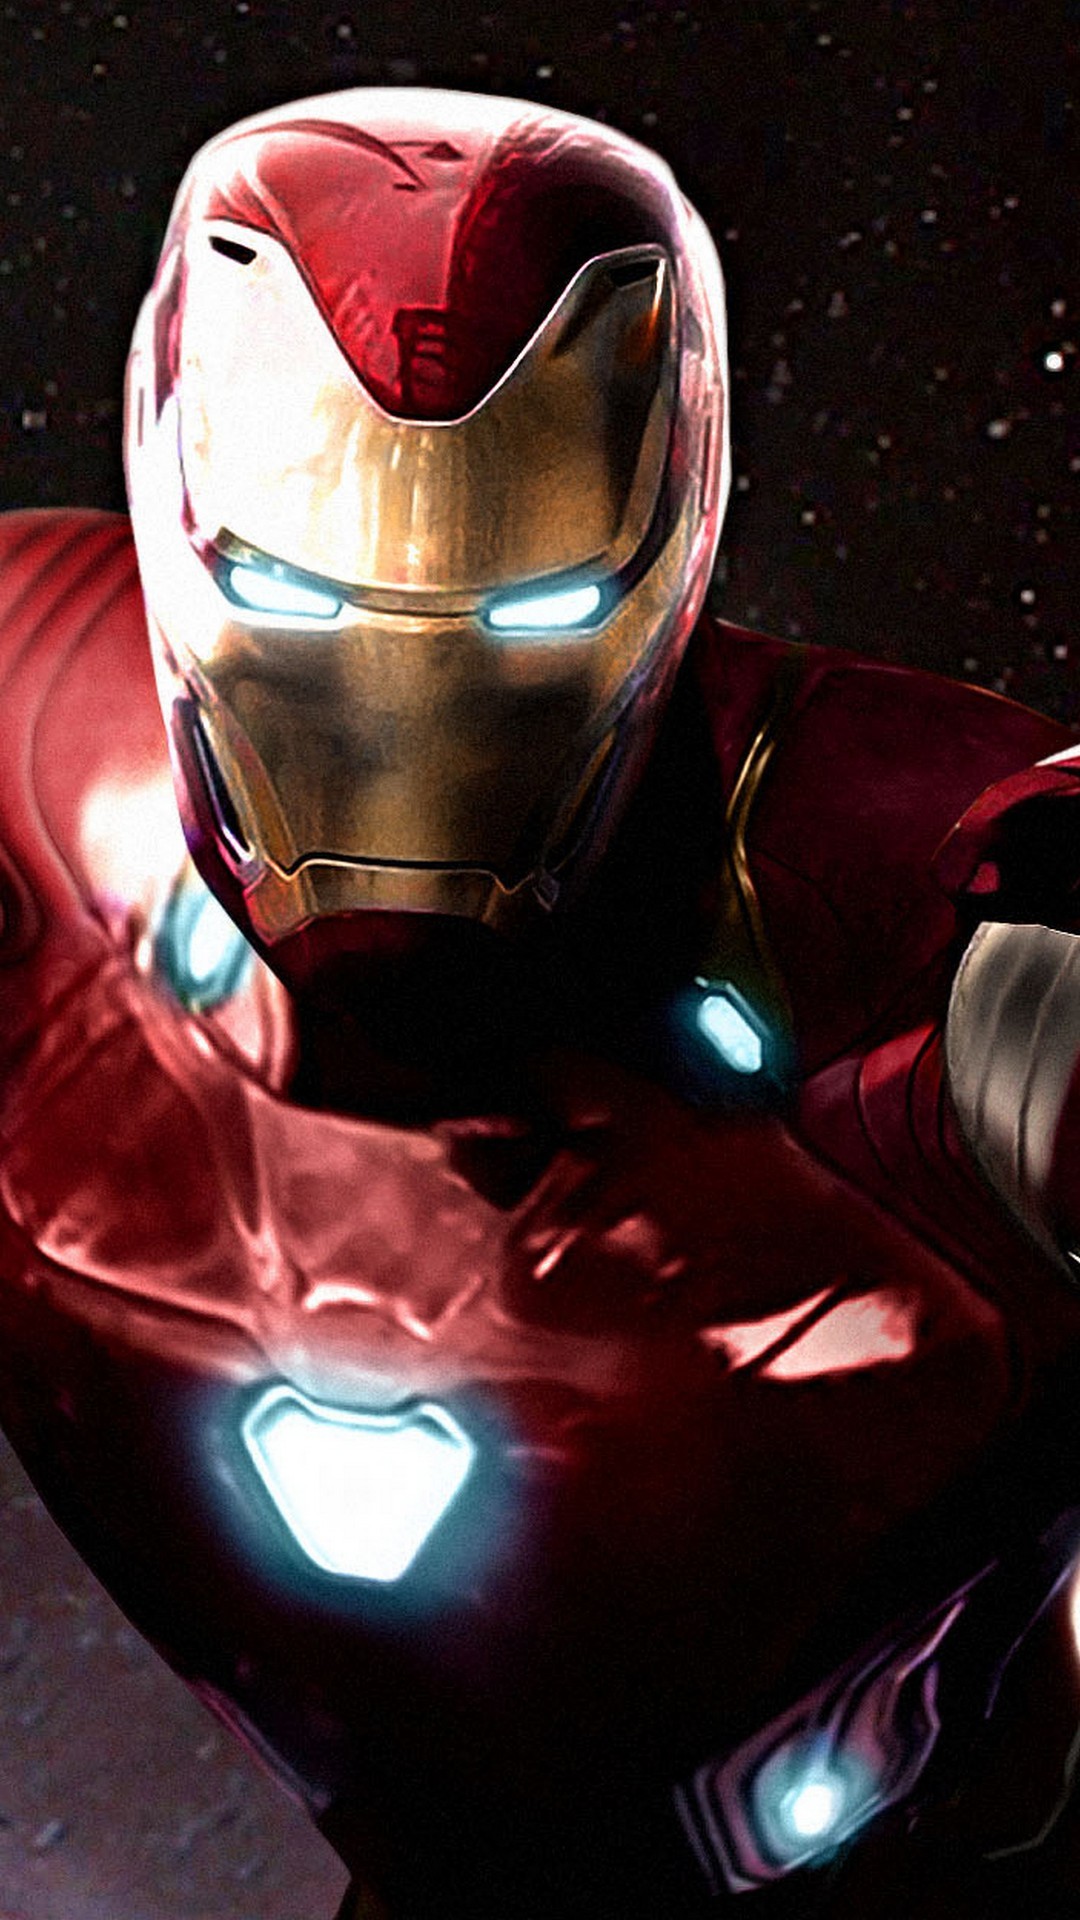 Nếu bạn là fan của Iron Man hoặc Avengers Infinity War, thì đừng bỏ lỡ cơ hội tải miễn phí hình nền Iron Man Avengers Infinity War iPhone 2019 từ chúng tôi. Chúng tôi cung cấp nhiều loại hình nền độc đáo và chất lượng cao để bạn lựa chọn. 